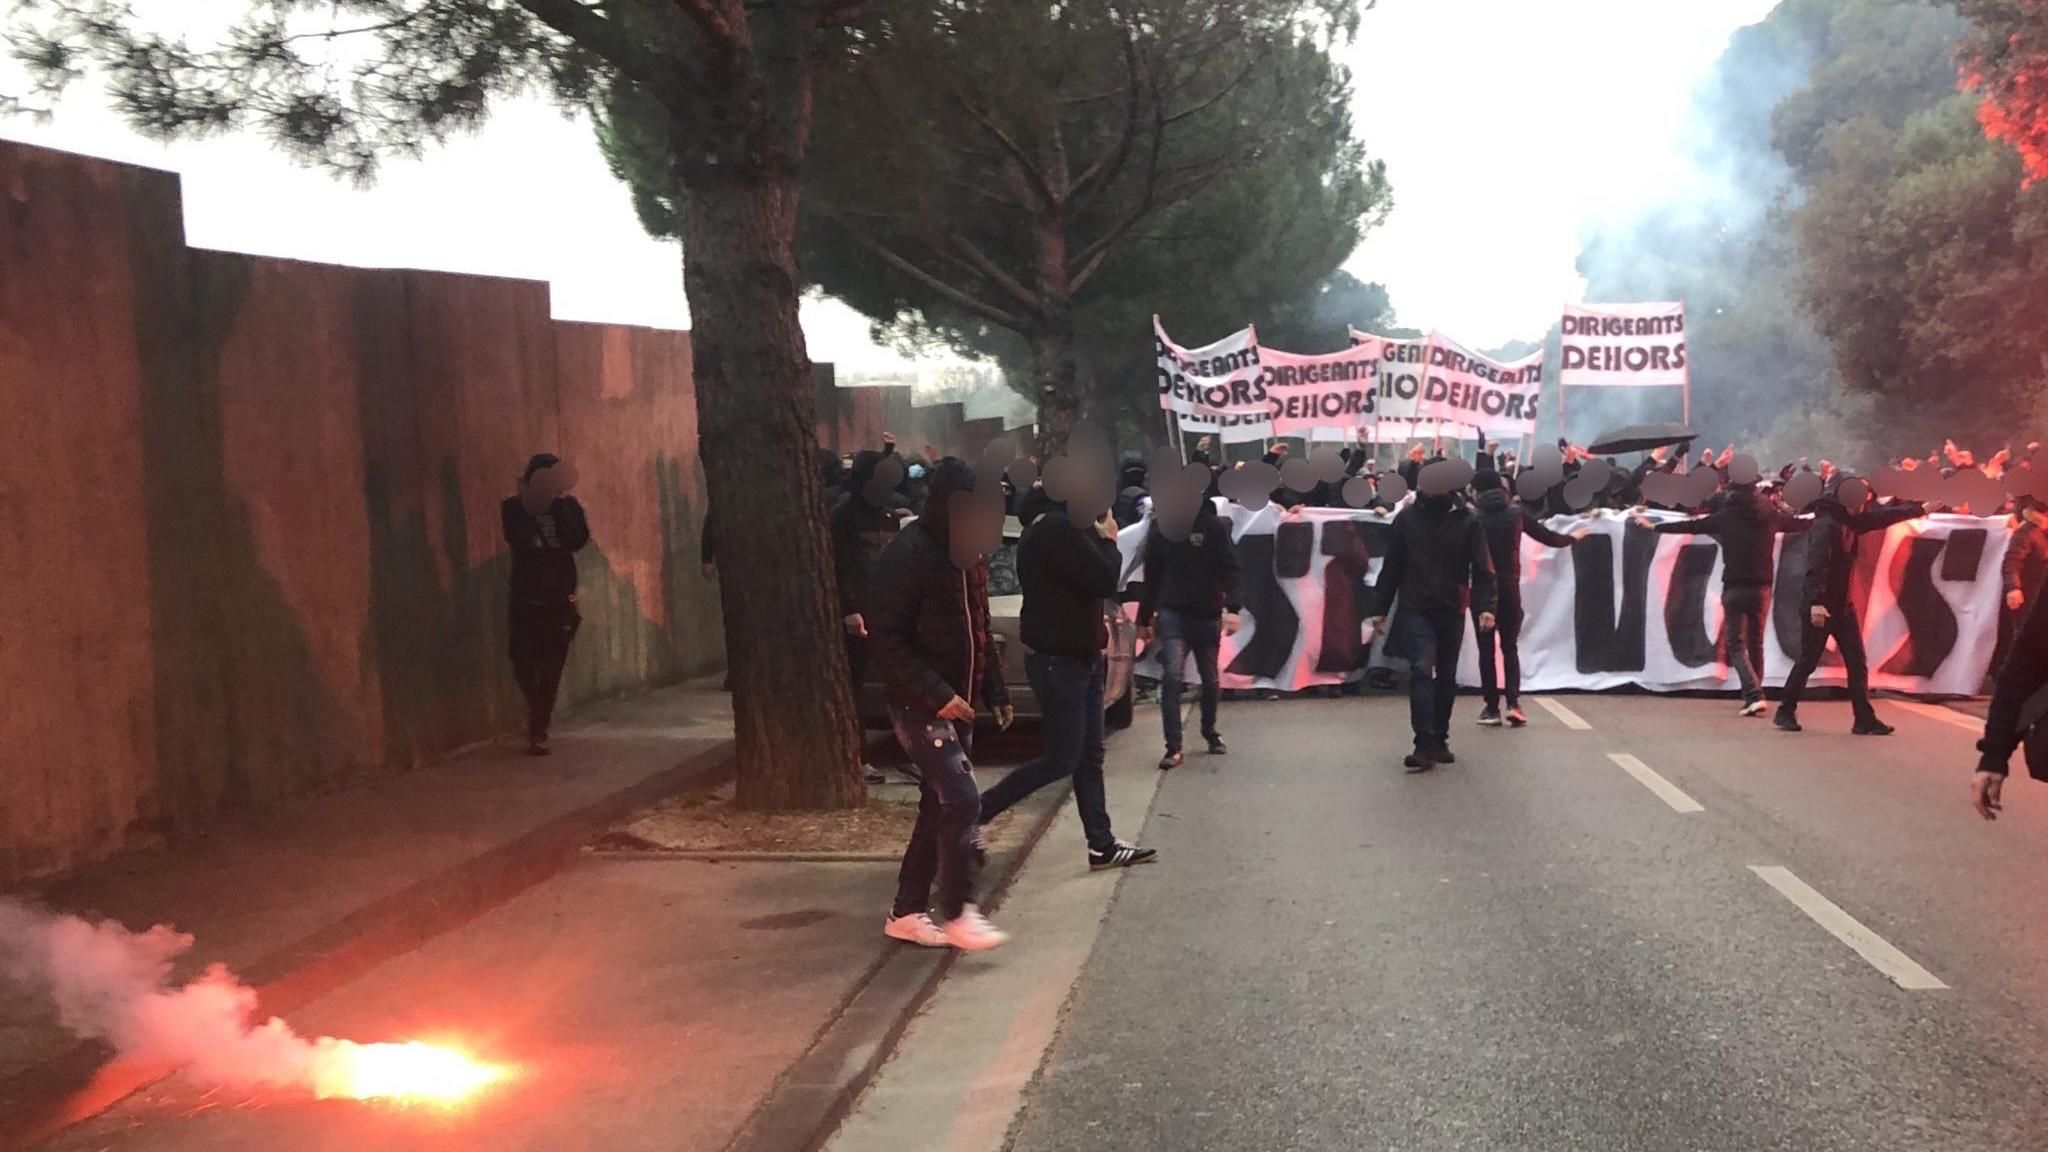 Фанаты Марселя пытаются прорваться на базу клуба, рядом вспыхнул пожар из-за файеров: видео